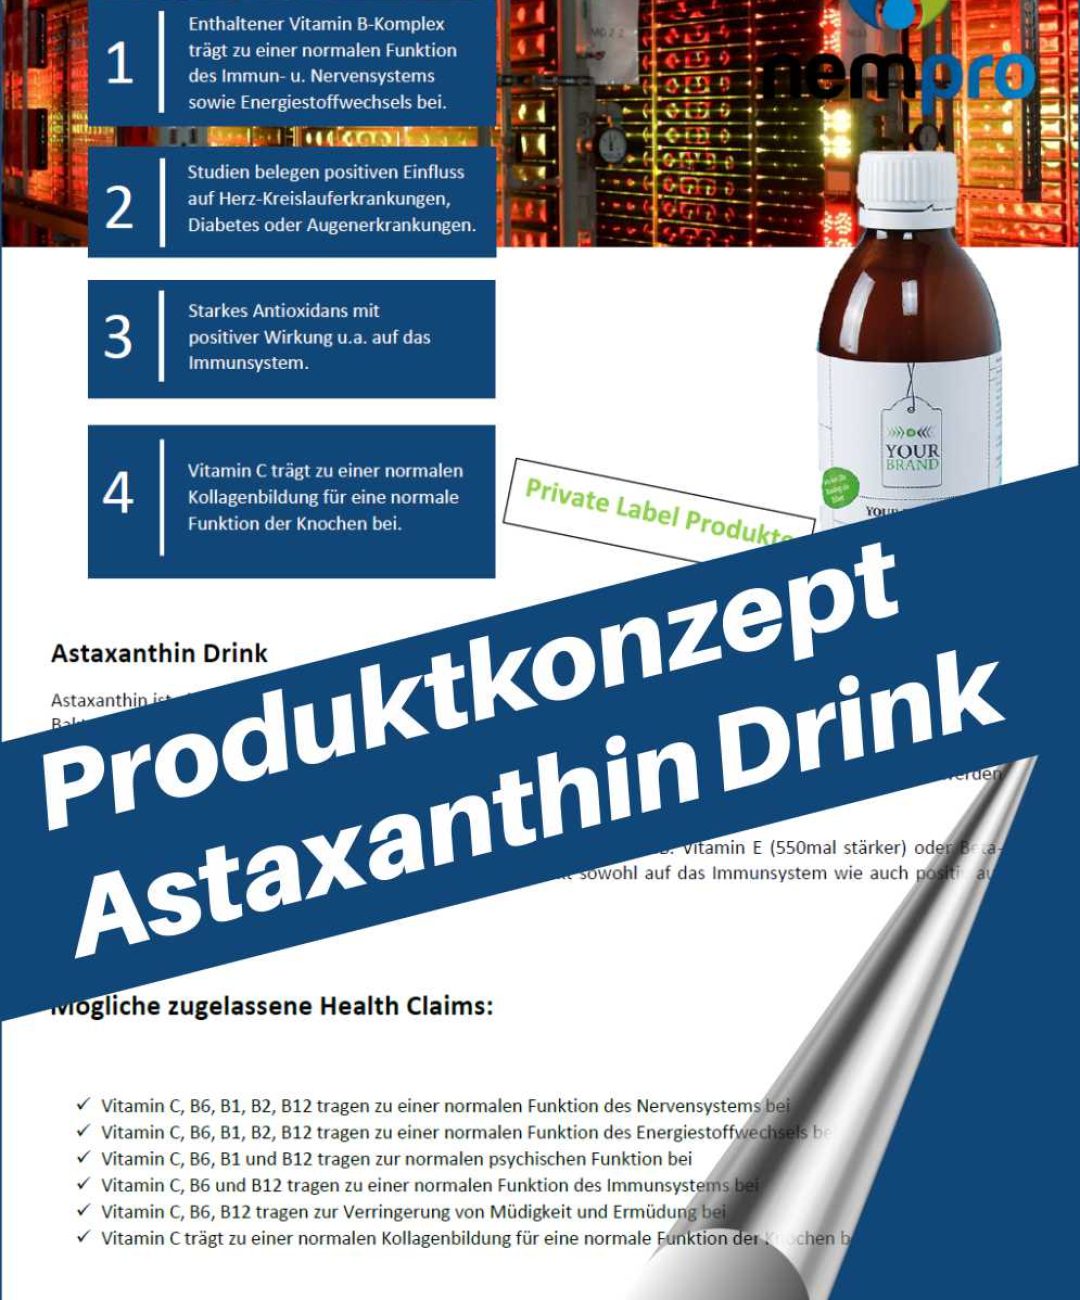 Astaxanthin Drink